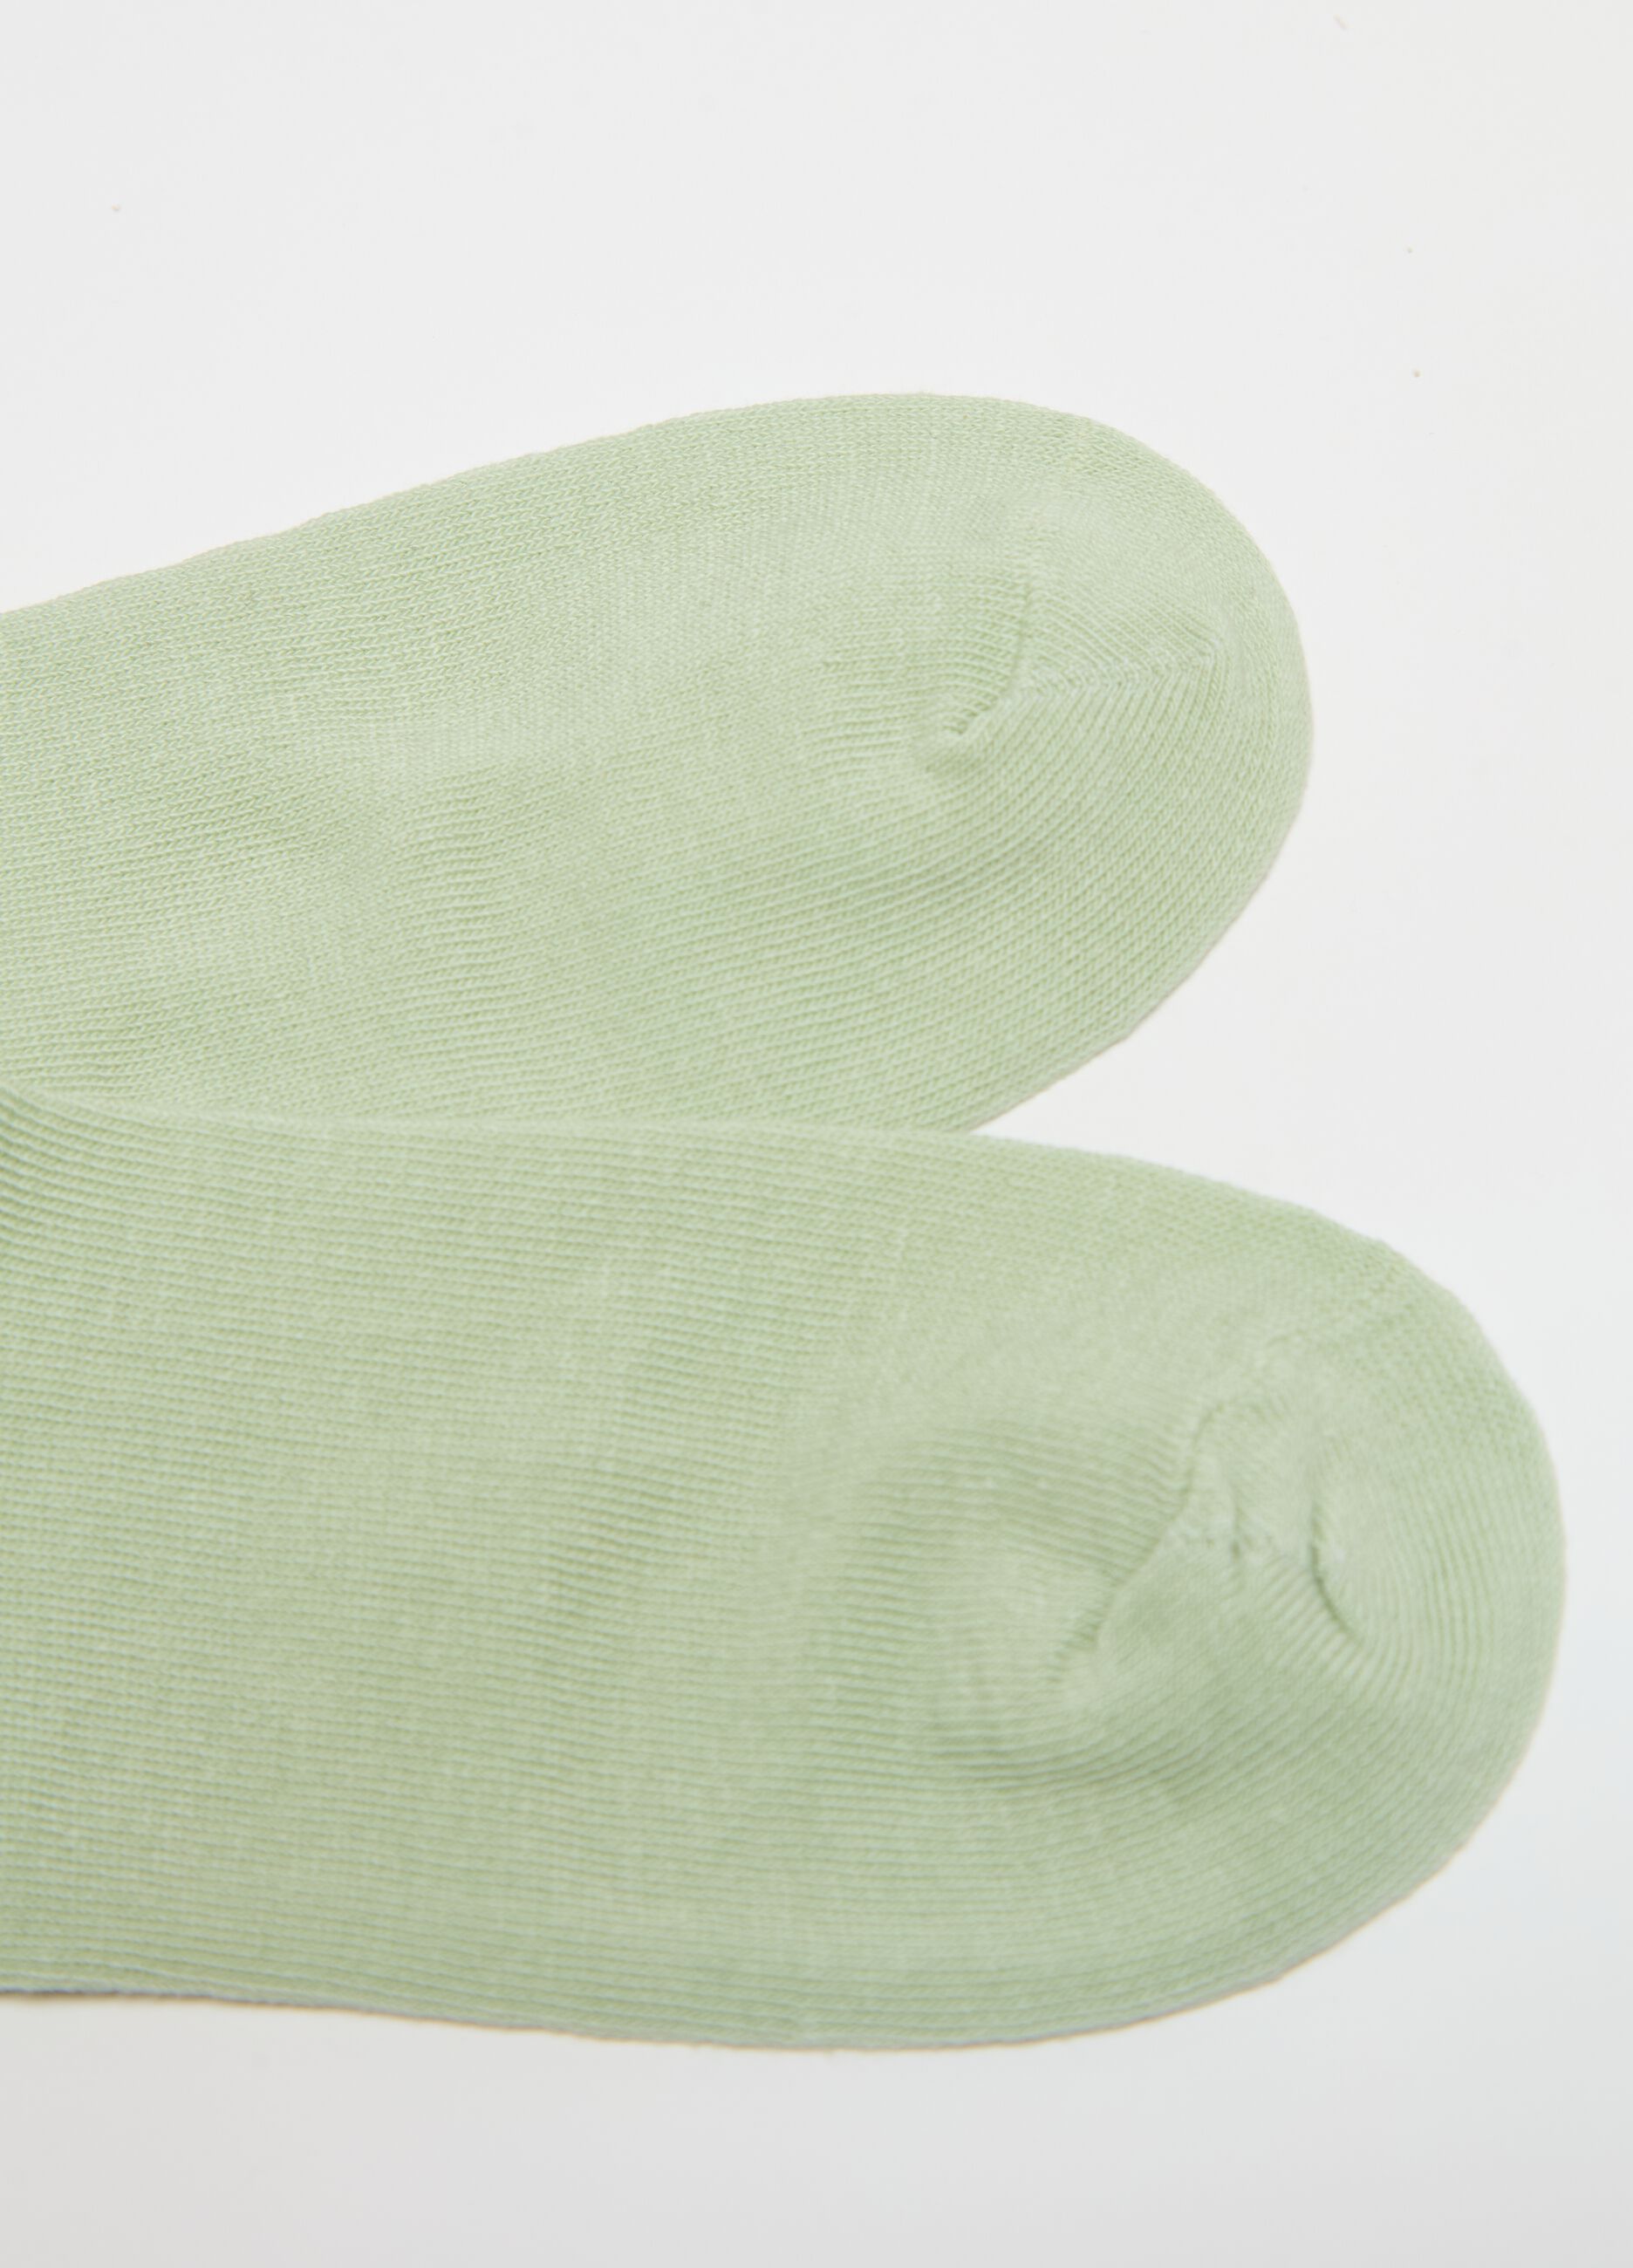 Pack tres calcetines invisibles de algodón orgánico